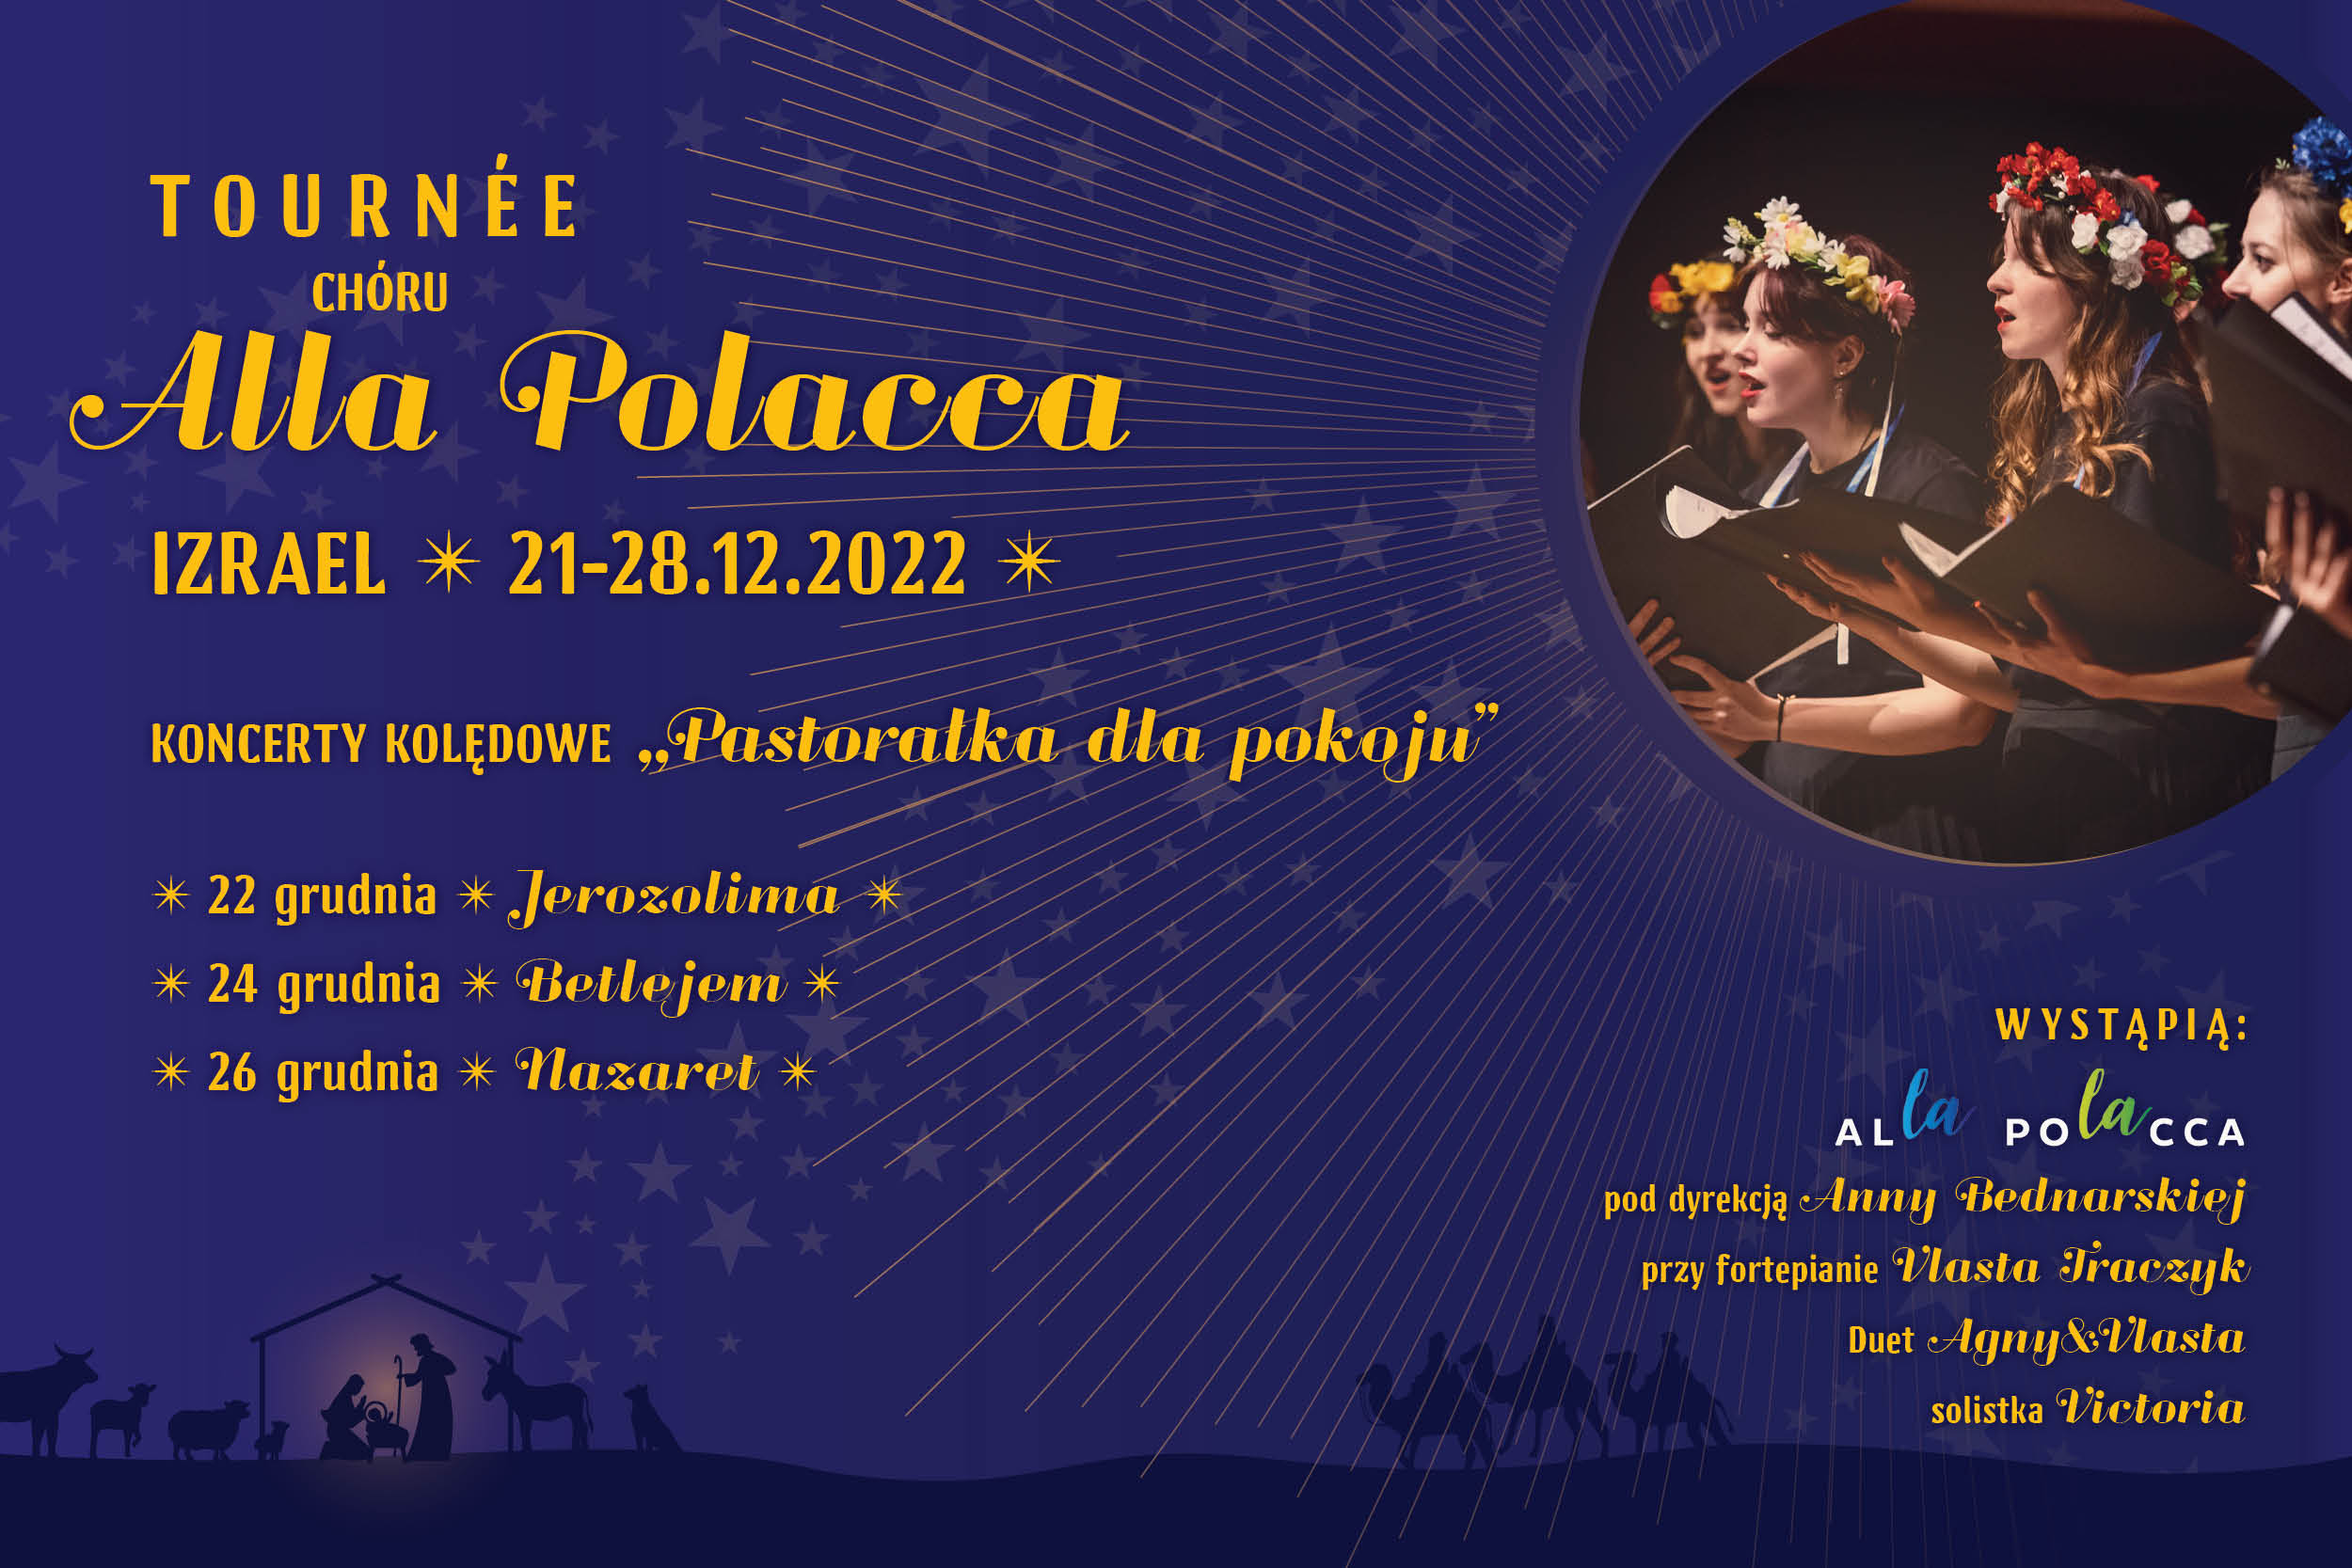 Tournee Chóru Alla Polacca - IZRAEL 21-28.12